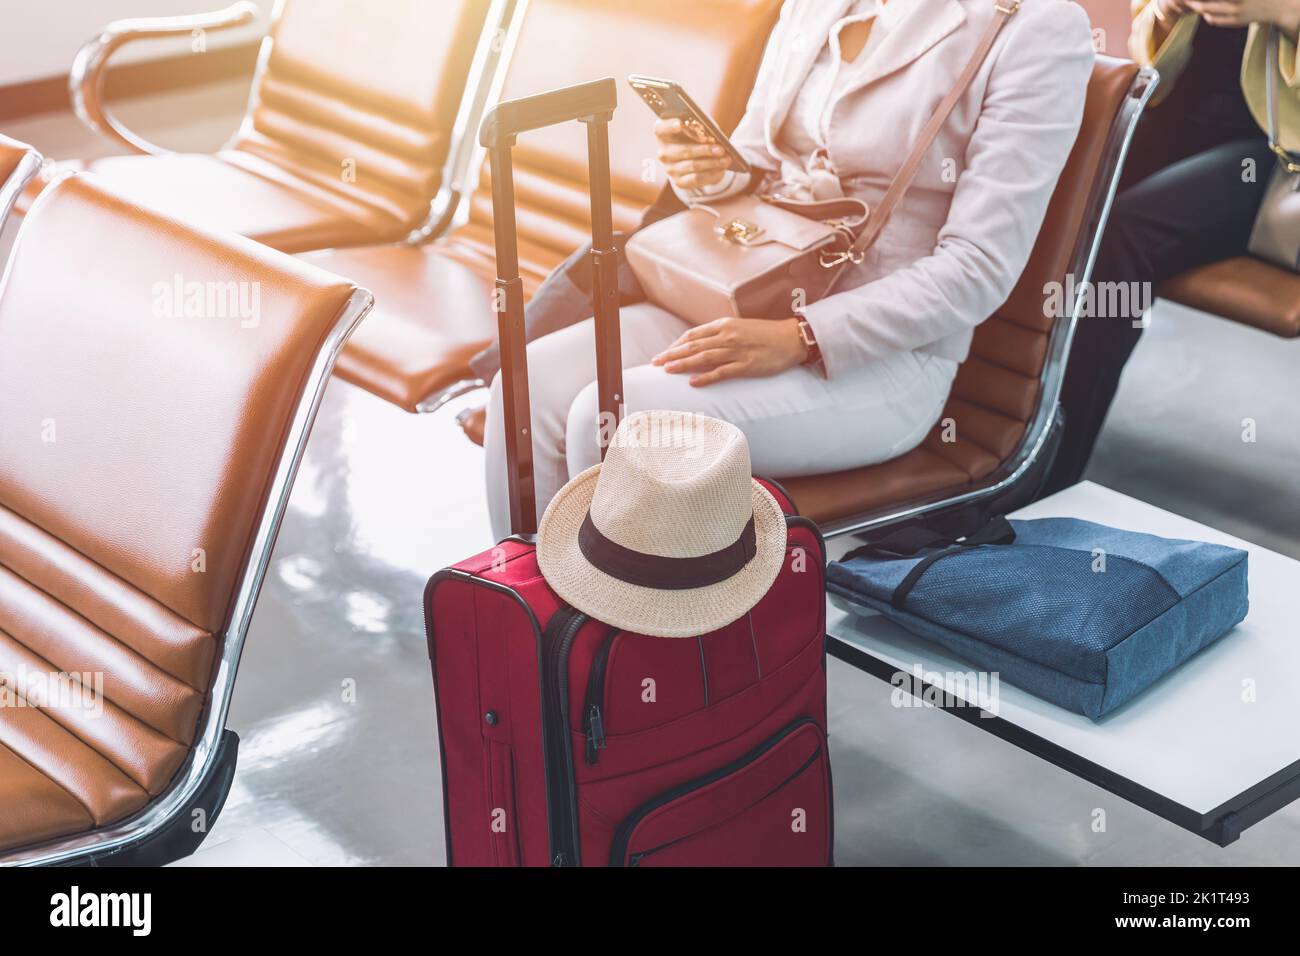 Frau Touristen Reisende mit Smartphone wartet auf Flug Urlaub Reise Tour am Flughafen nach dem offenen Land Stockfoto